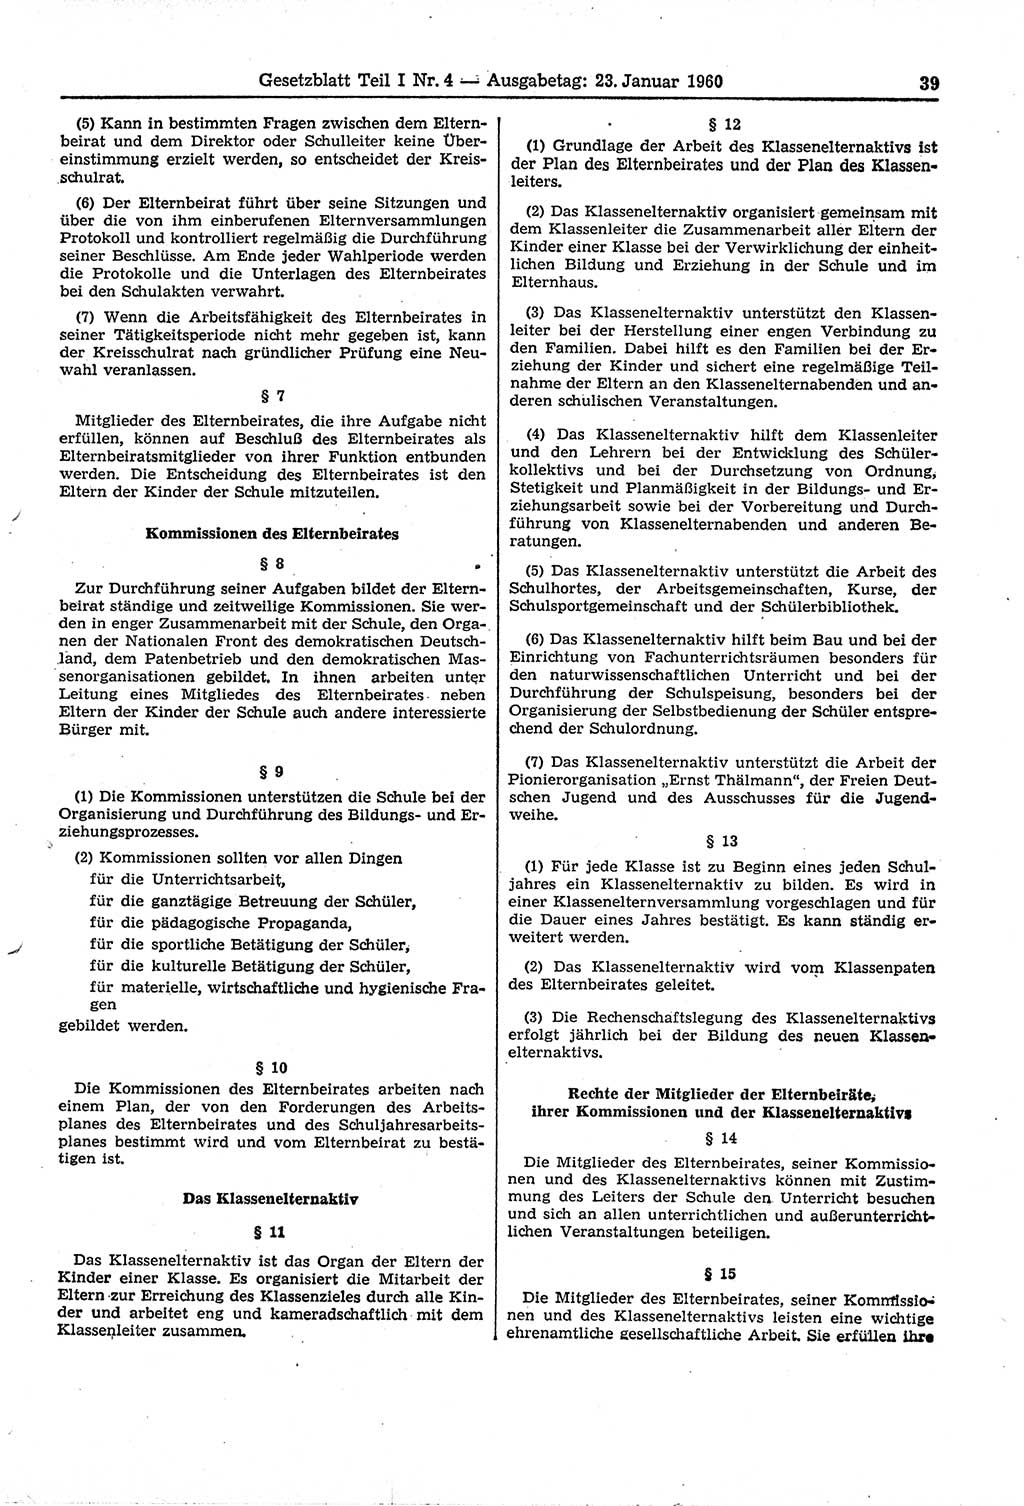 Gesetzblatt (GBl.) der Deutschen Demokratischen Republik (DDR) Teil Ⅰ 1960, Seite 39 (GBl. DDR Ⅰ 1960, S. 39)